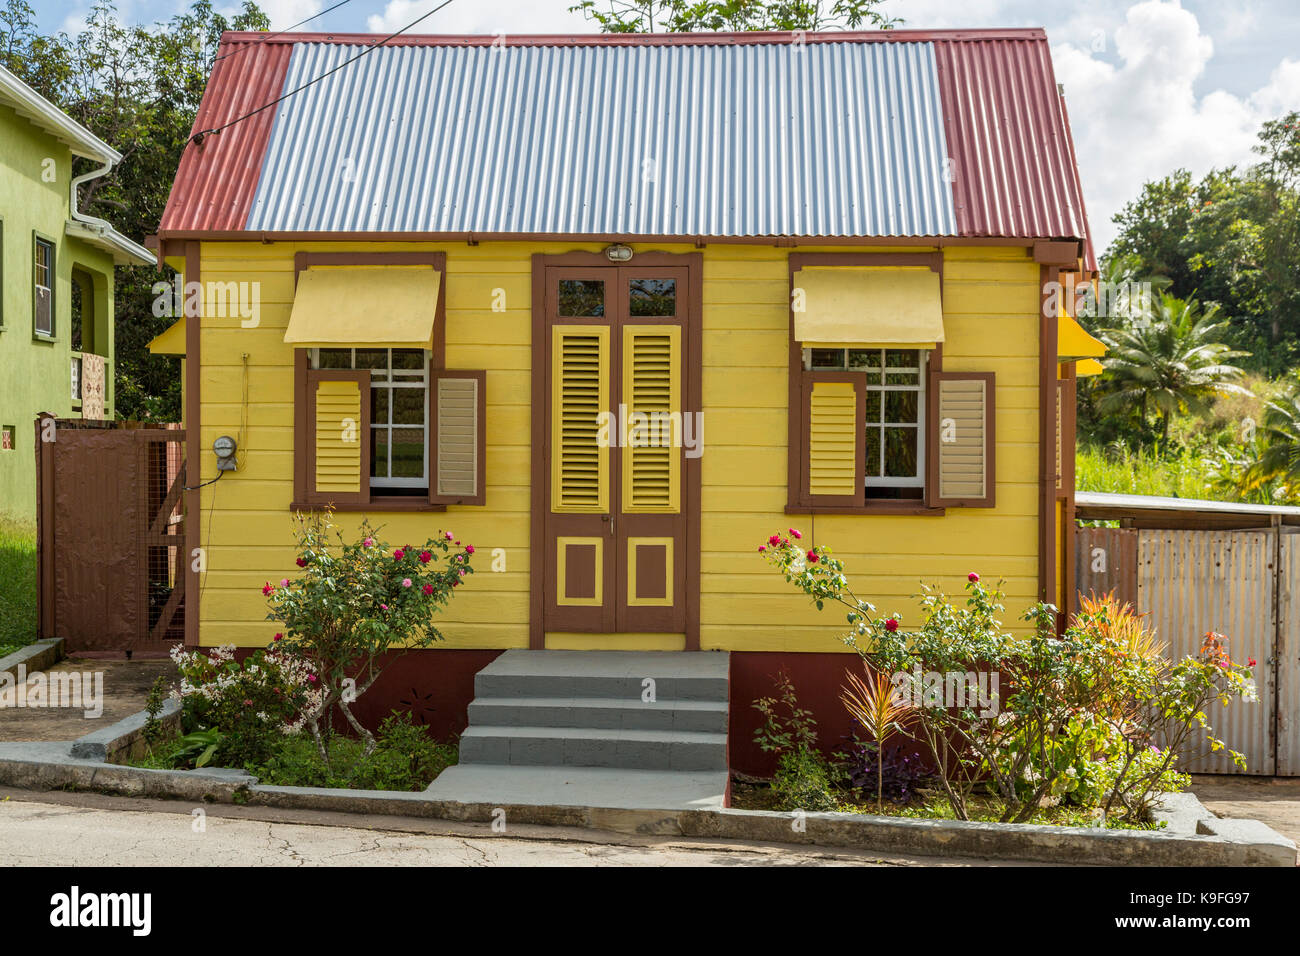 Barbados. Chattel House (ripido tetto, nessuna sporgenza) Costruzione in campagna. Per solo uso editoriale. Foto Stock